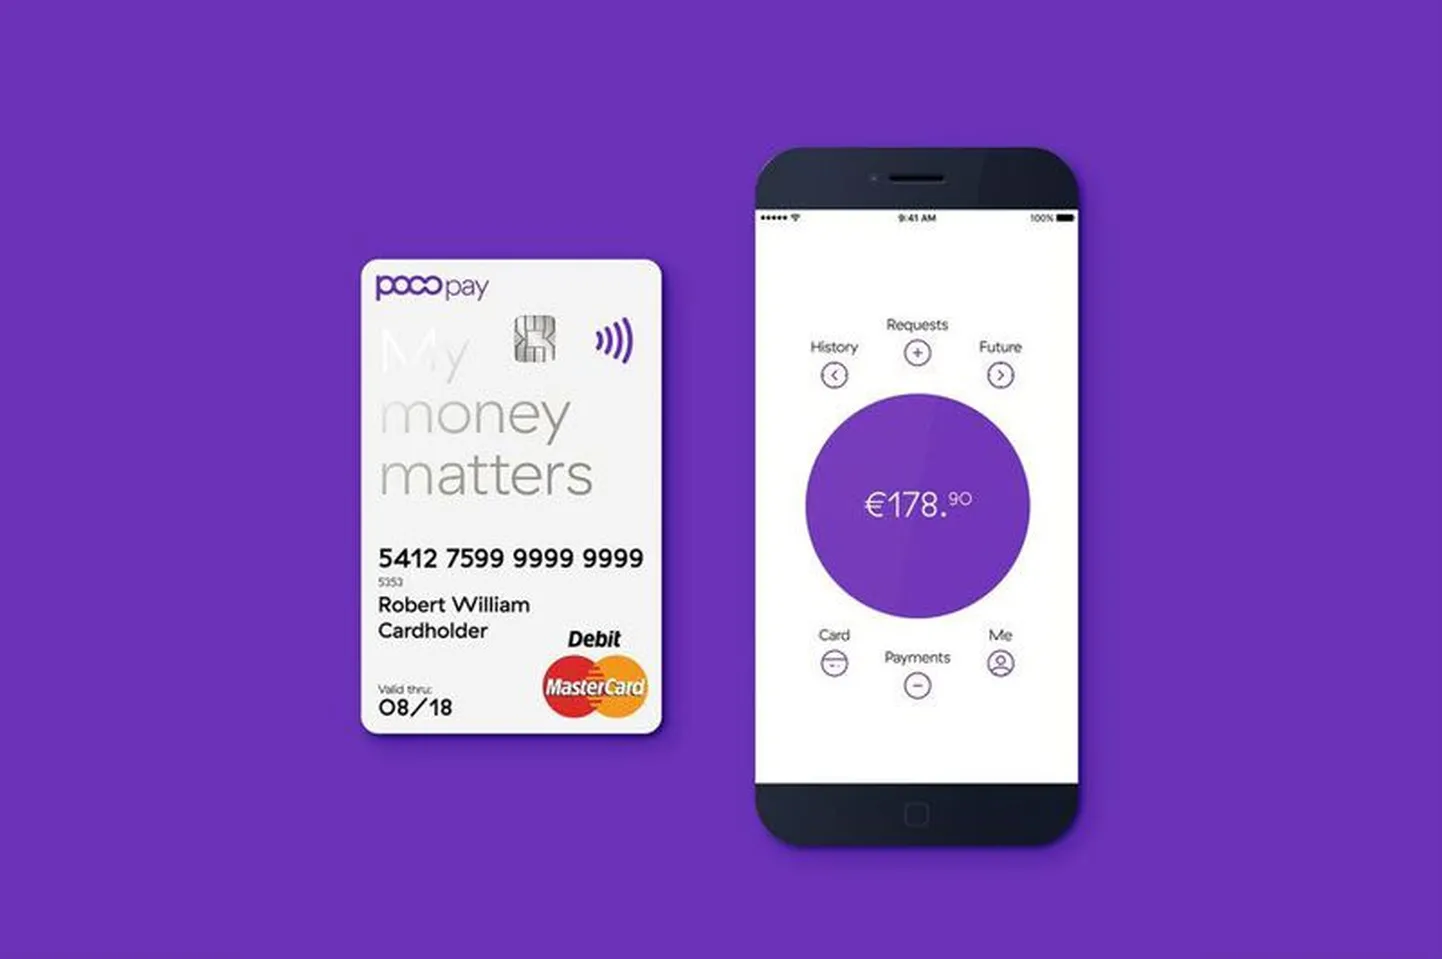 Pocopay kontaktivaba deebetkaart ja mobiilirakendus näitavad teed panganduse tulevikku